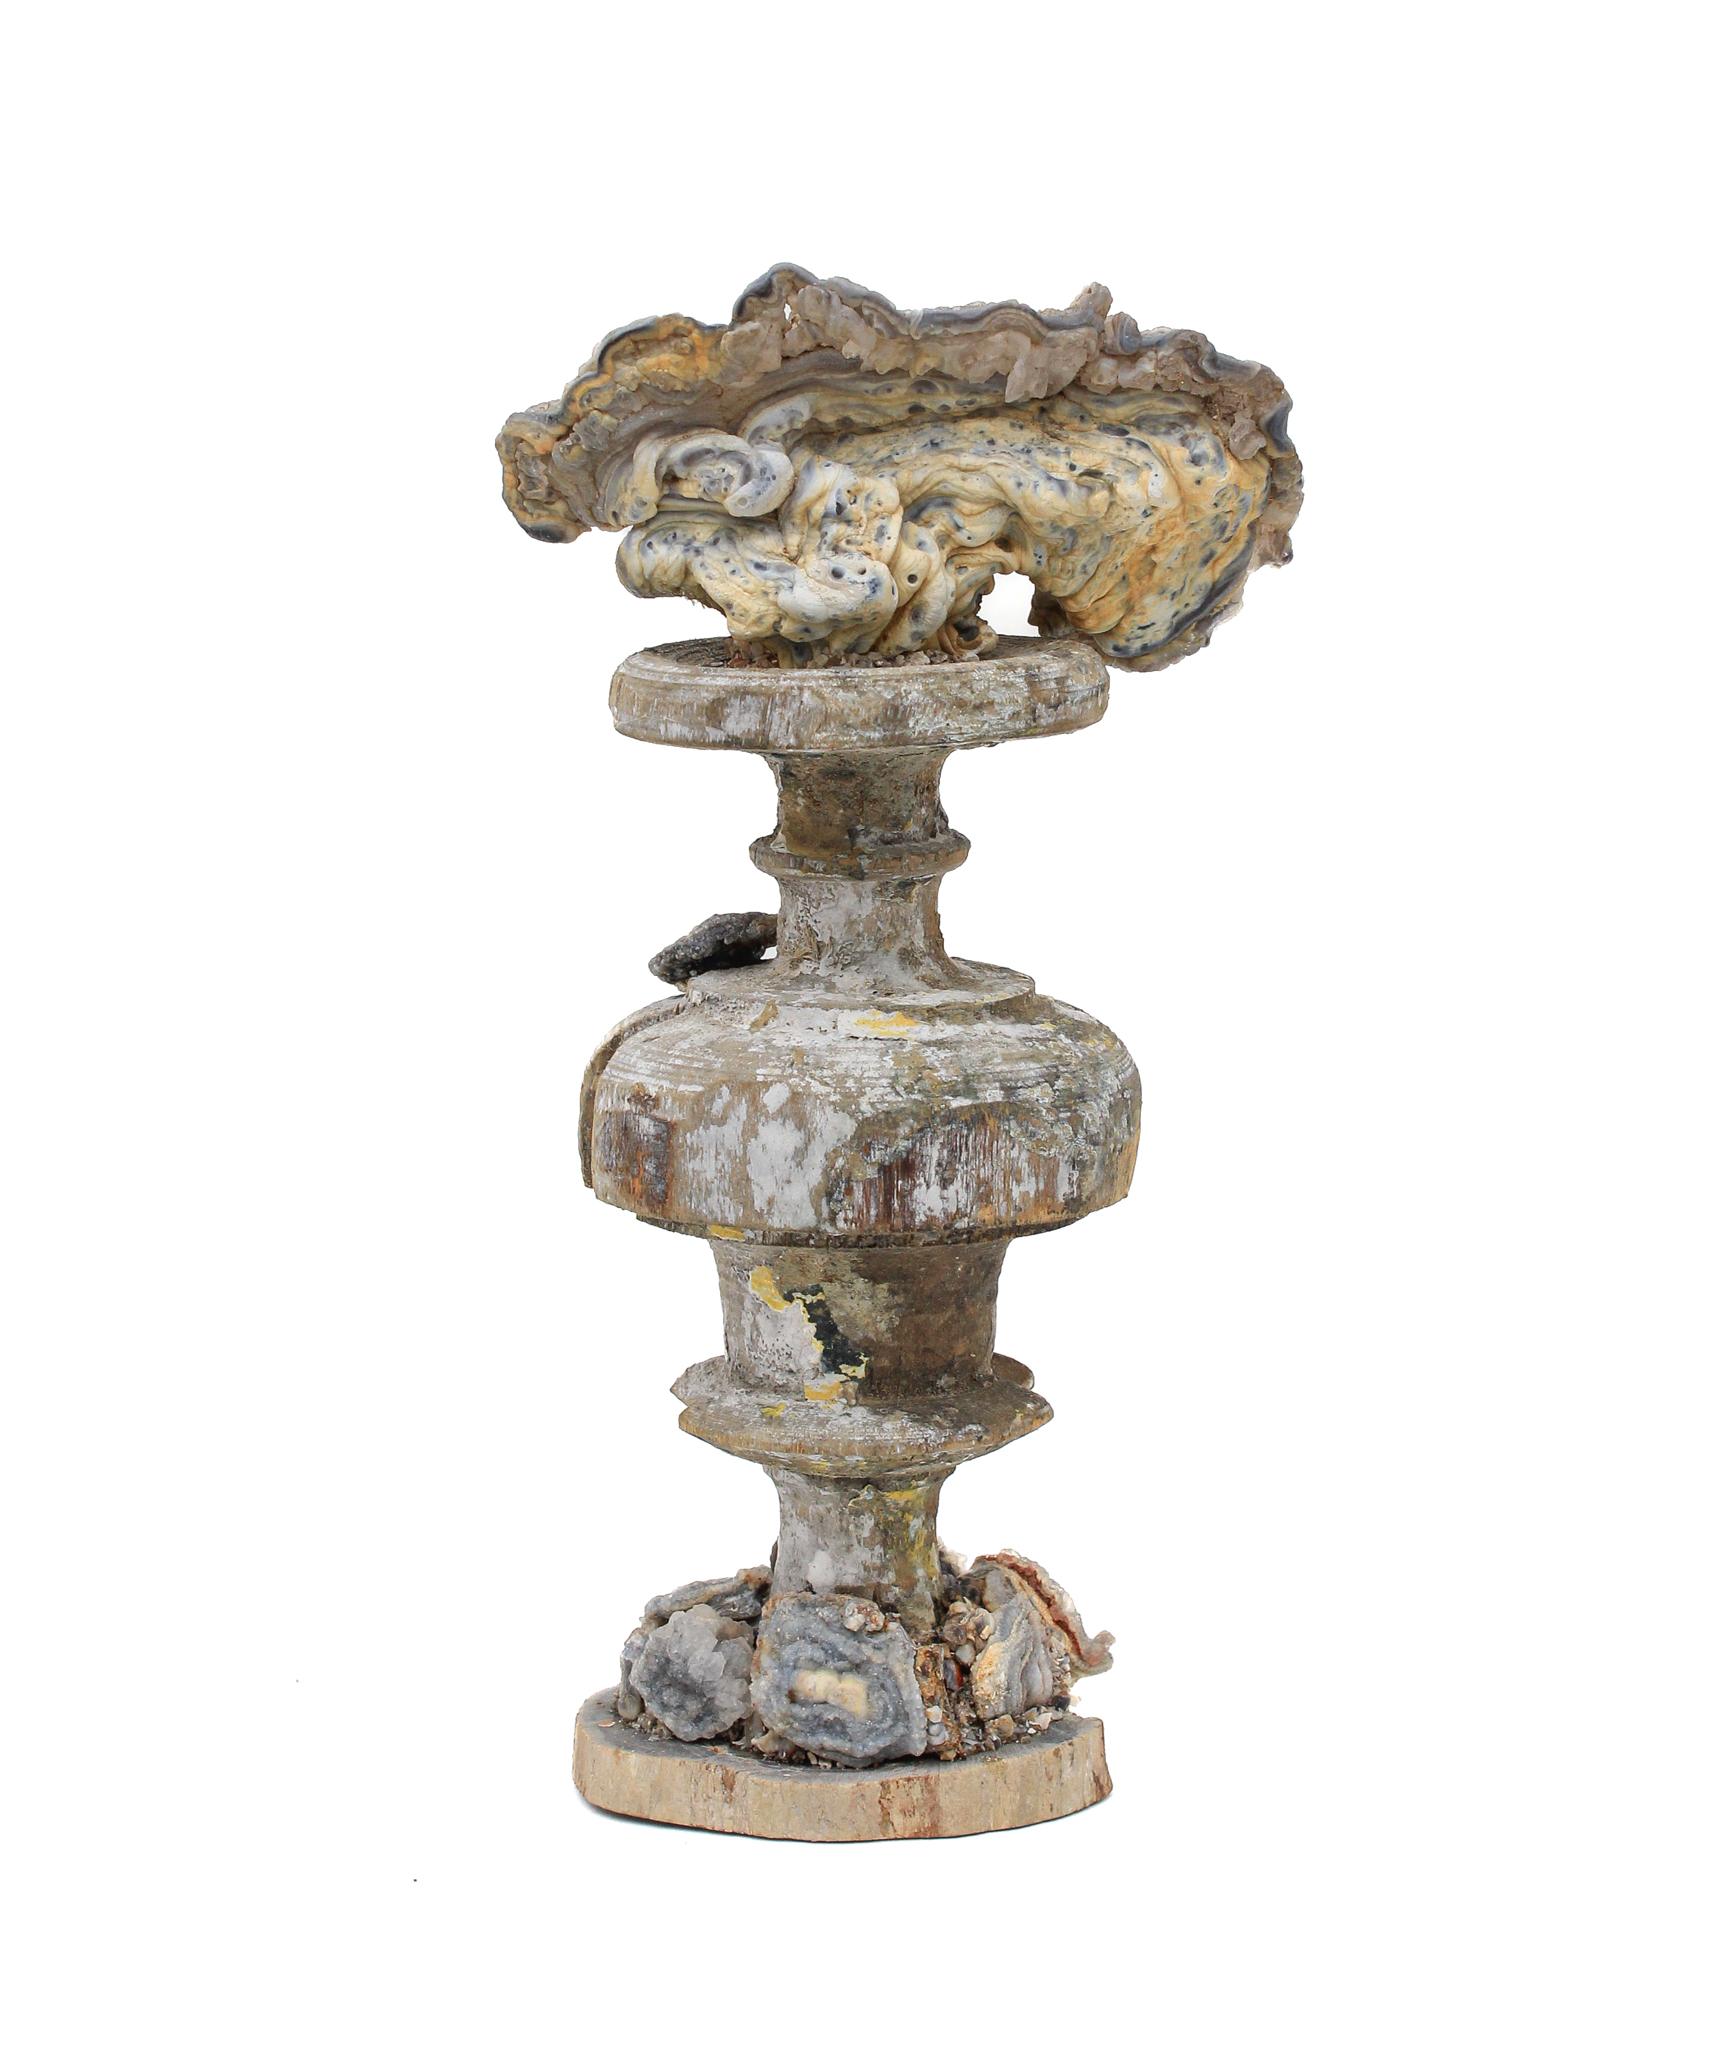 italienische Vase aus dem 17. Jahrhundert, montiert und verkrustet mit Rosetten aus Chalcedon auf einem Sockel aus versteinertem Holz.

Dieses Fragment stammt aus einer Kirche in Florenz. Es wurde bei der historischen Überschwemmung von Florenz im